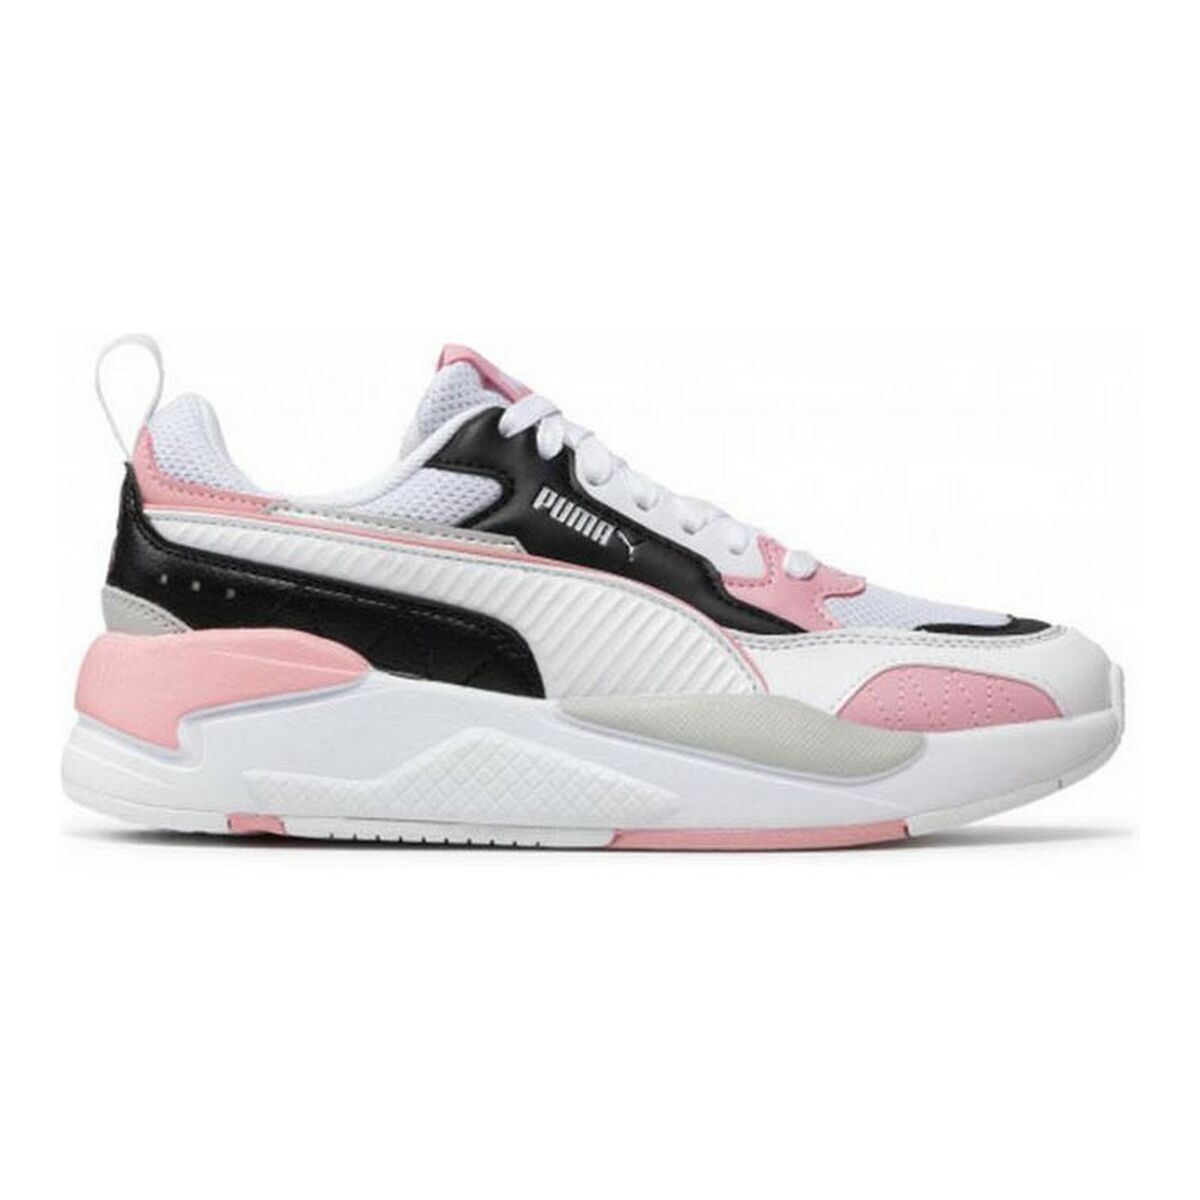 Puma Muse X-2 WN - Zapatillas deportivas para mujer, color blanco y rosa